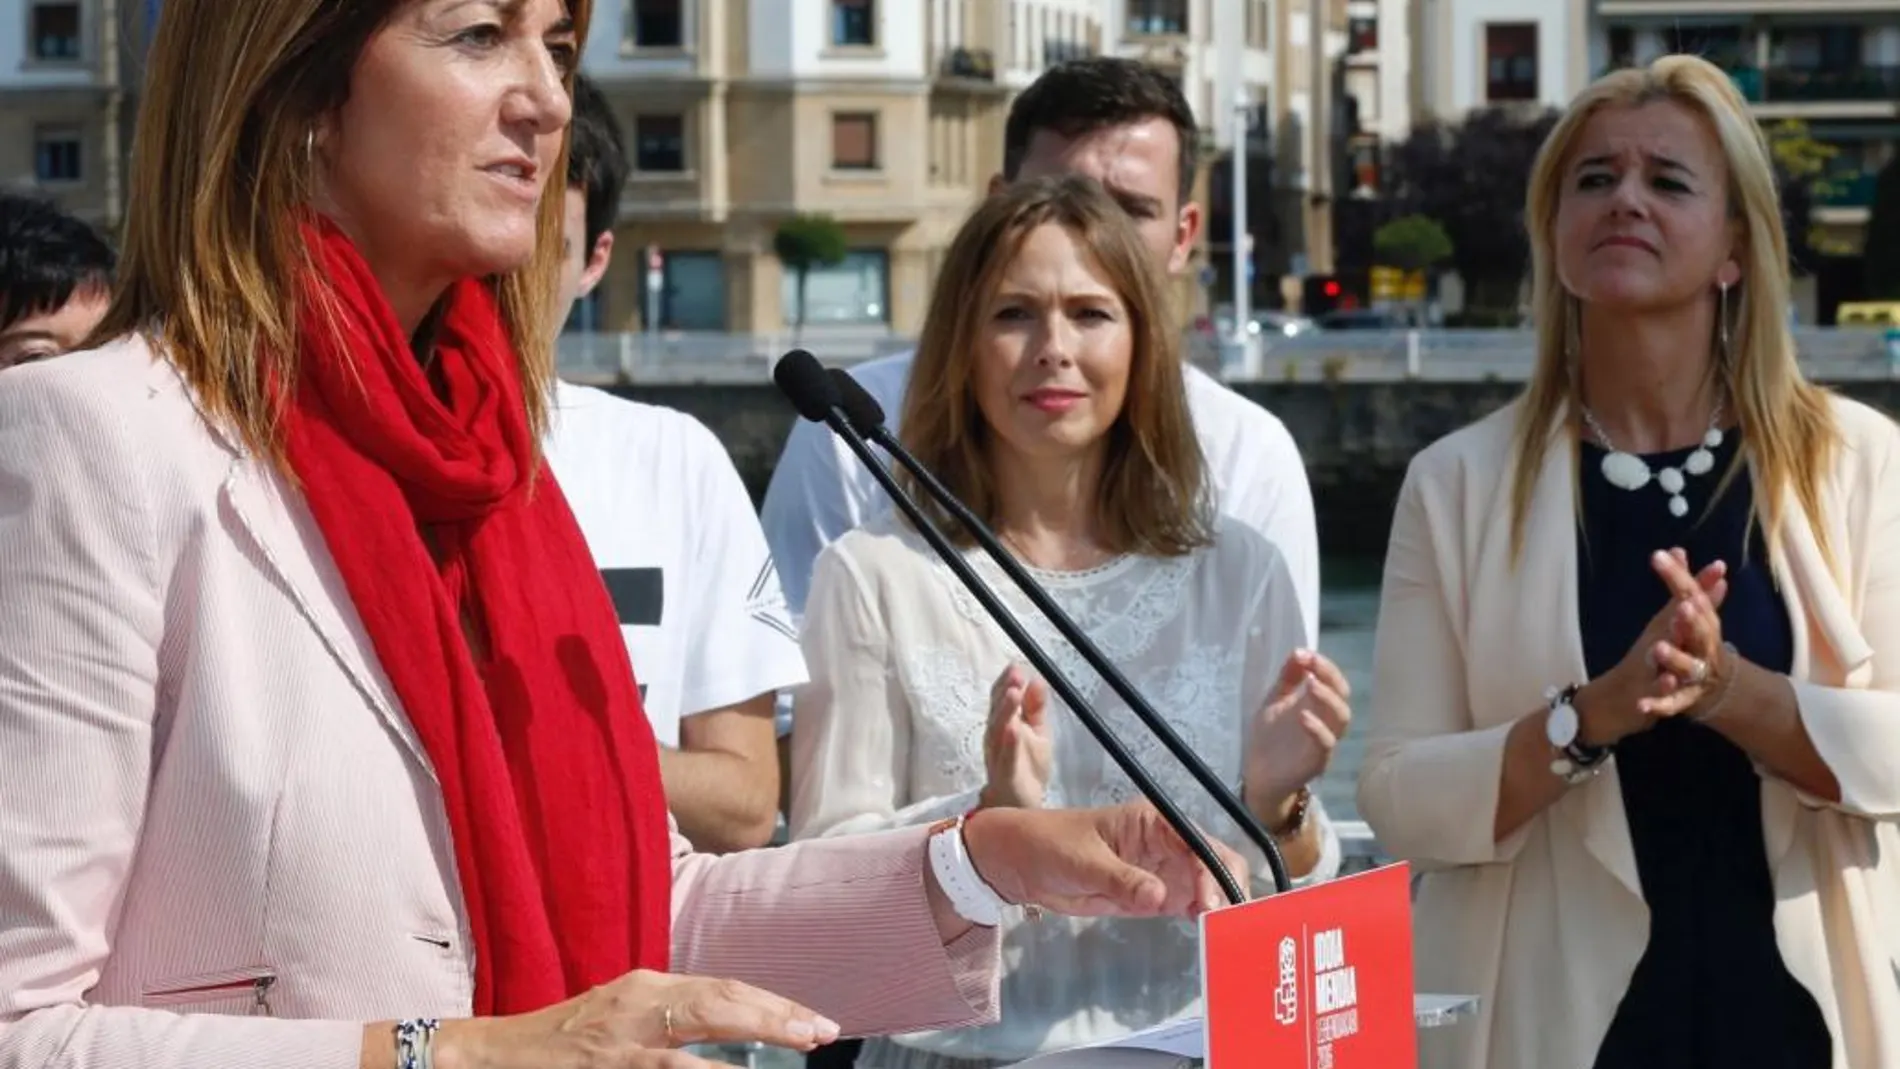 La candidata socialista a lehendakari, Idoia Mendia, durante su intervención en un acto electoral en Portugalete